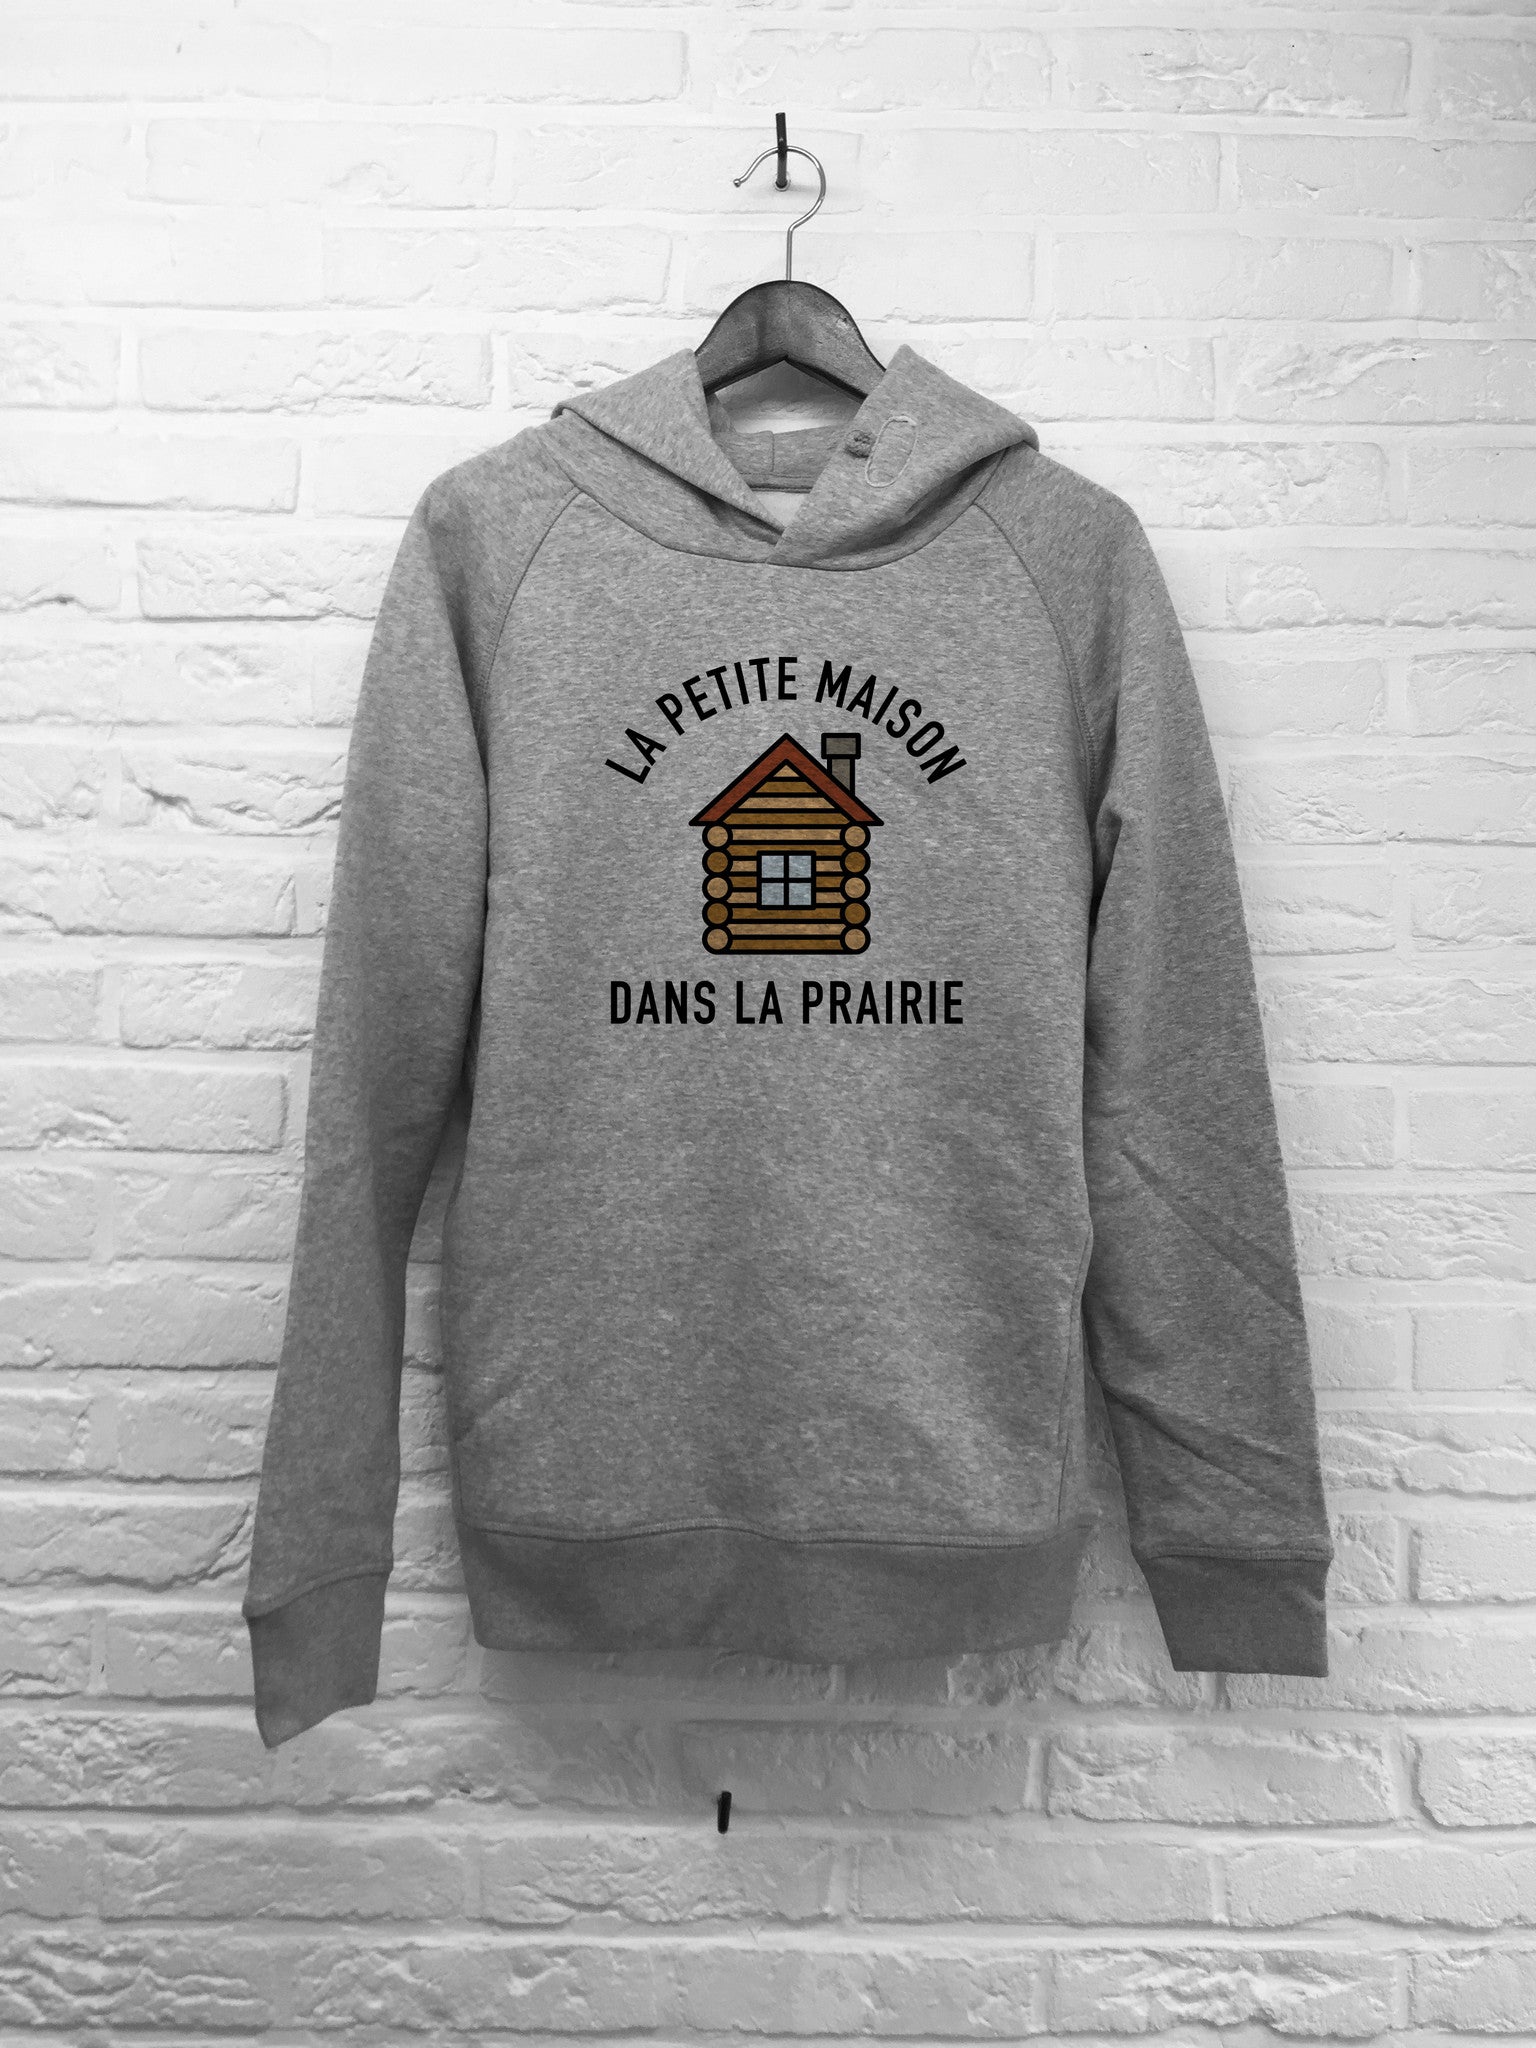 La petite maison dans la prairie - Hoodies Deluxe-Sweat shirts-Atelier Amelot